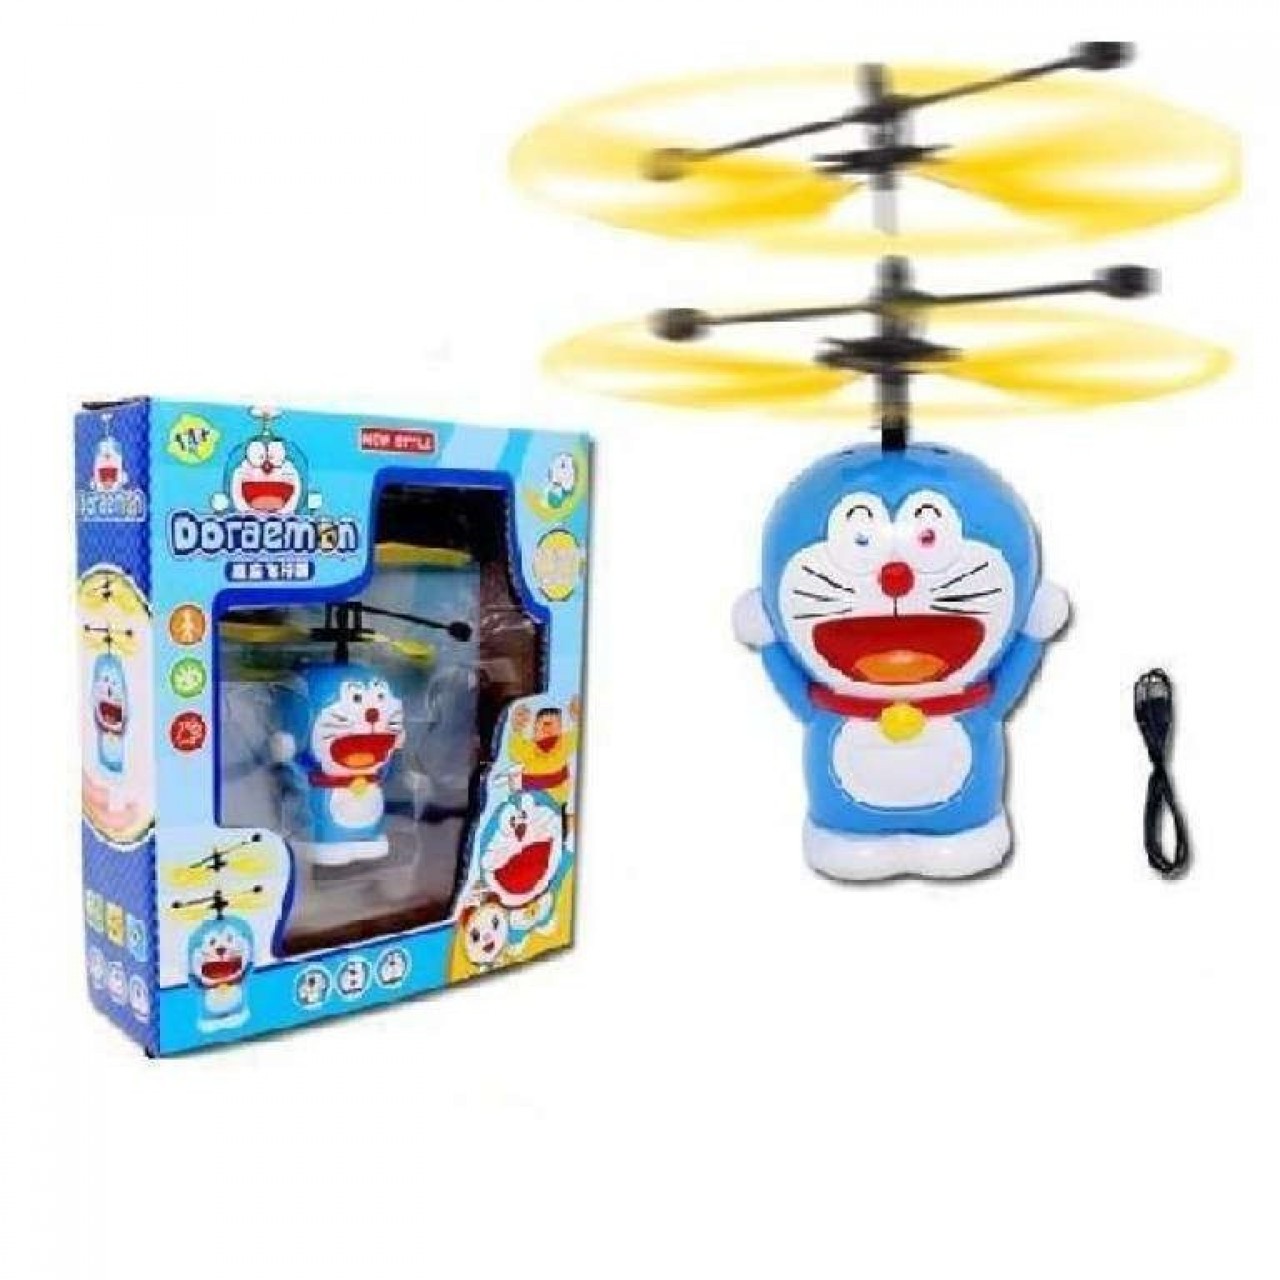 Flying Doraemon Toy For Kids